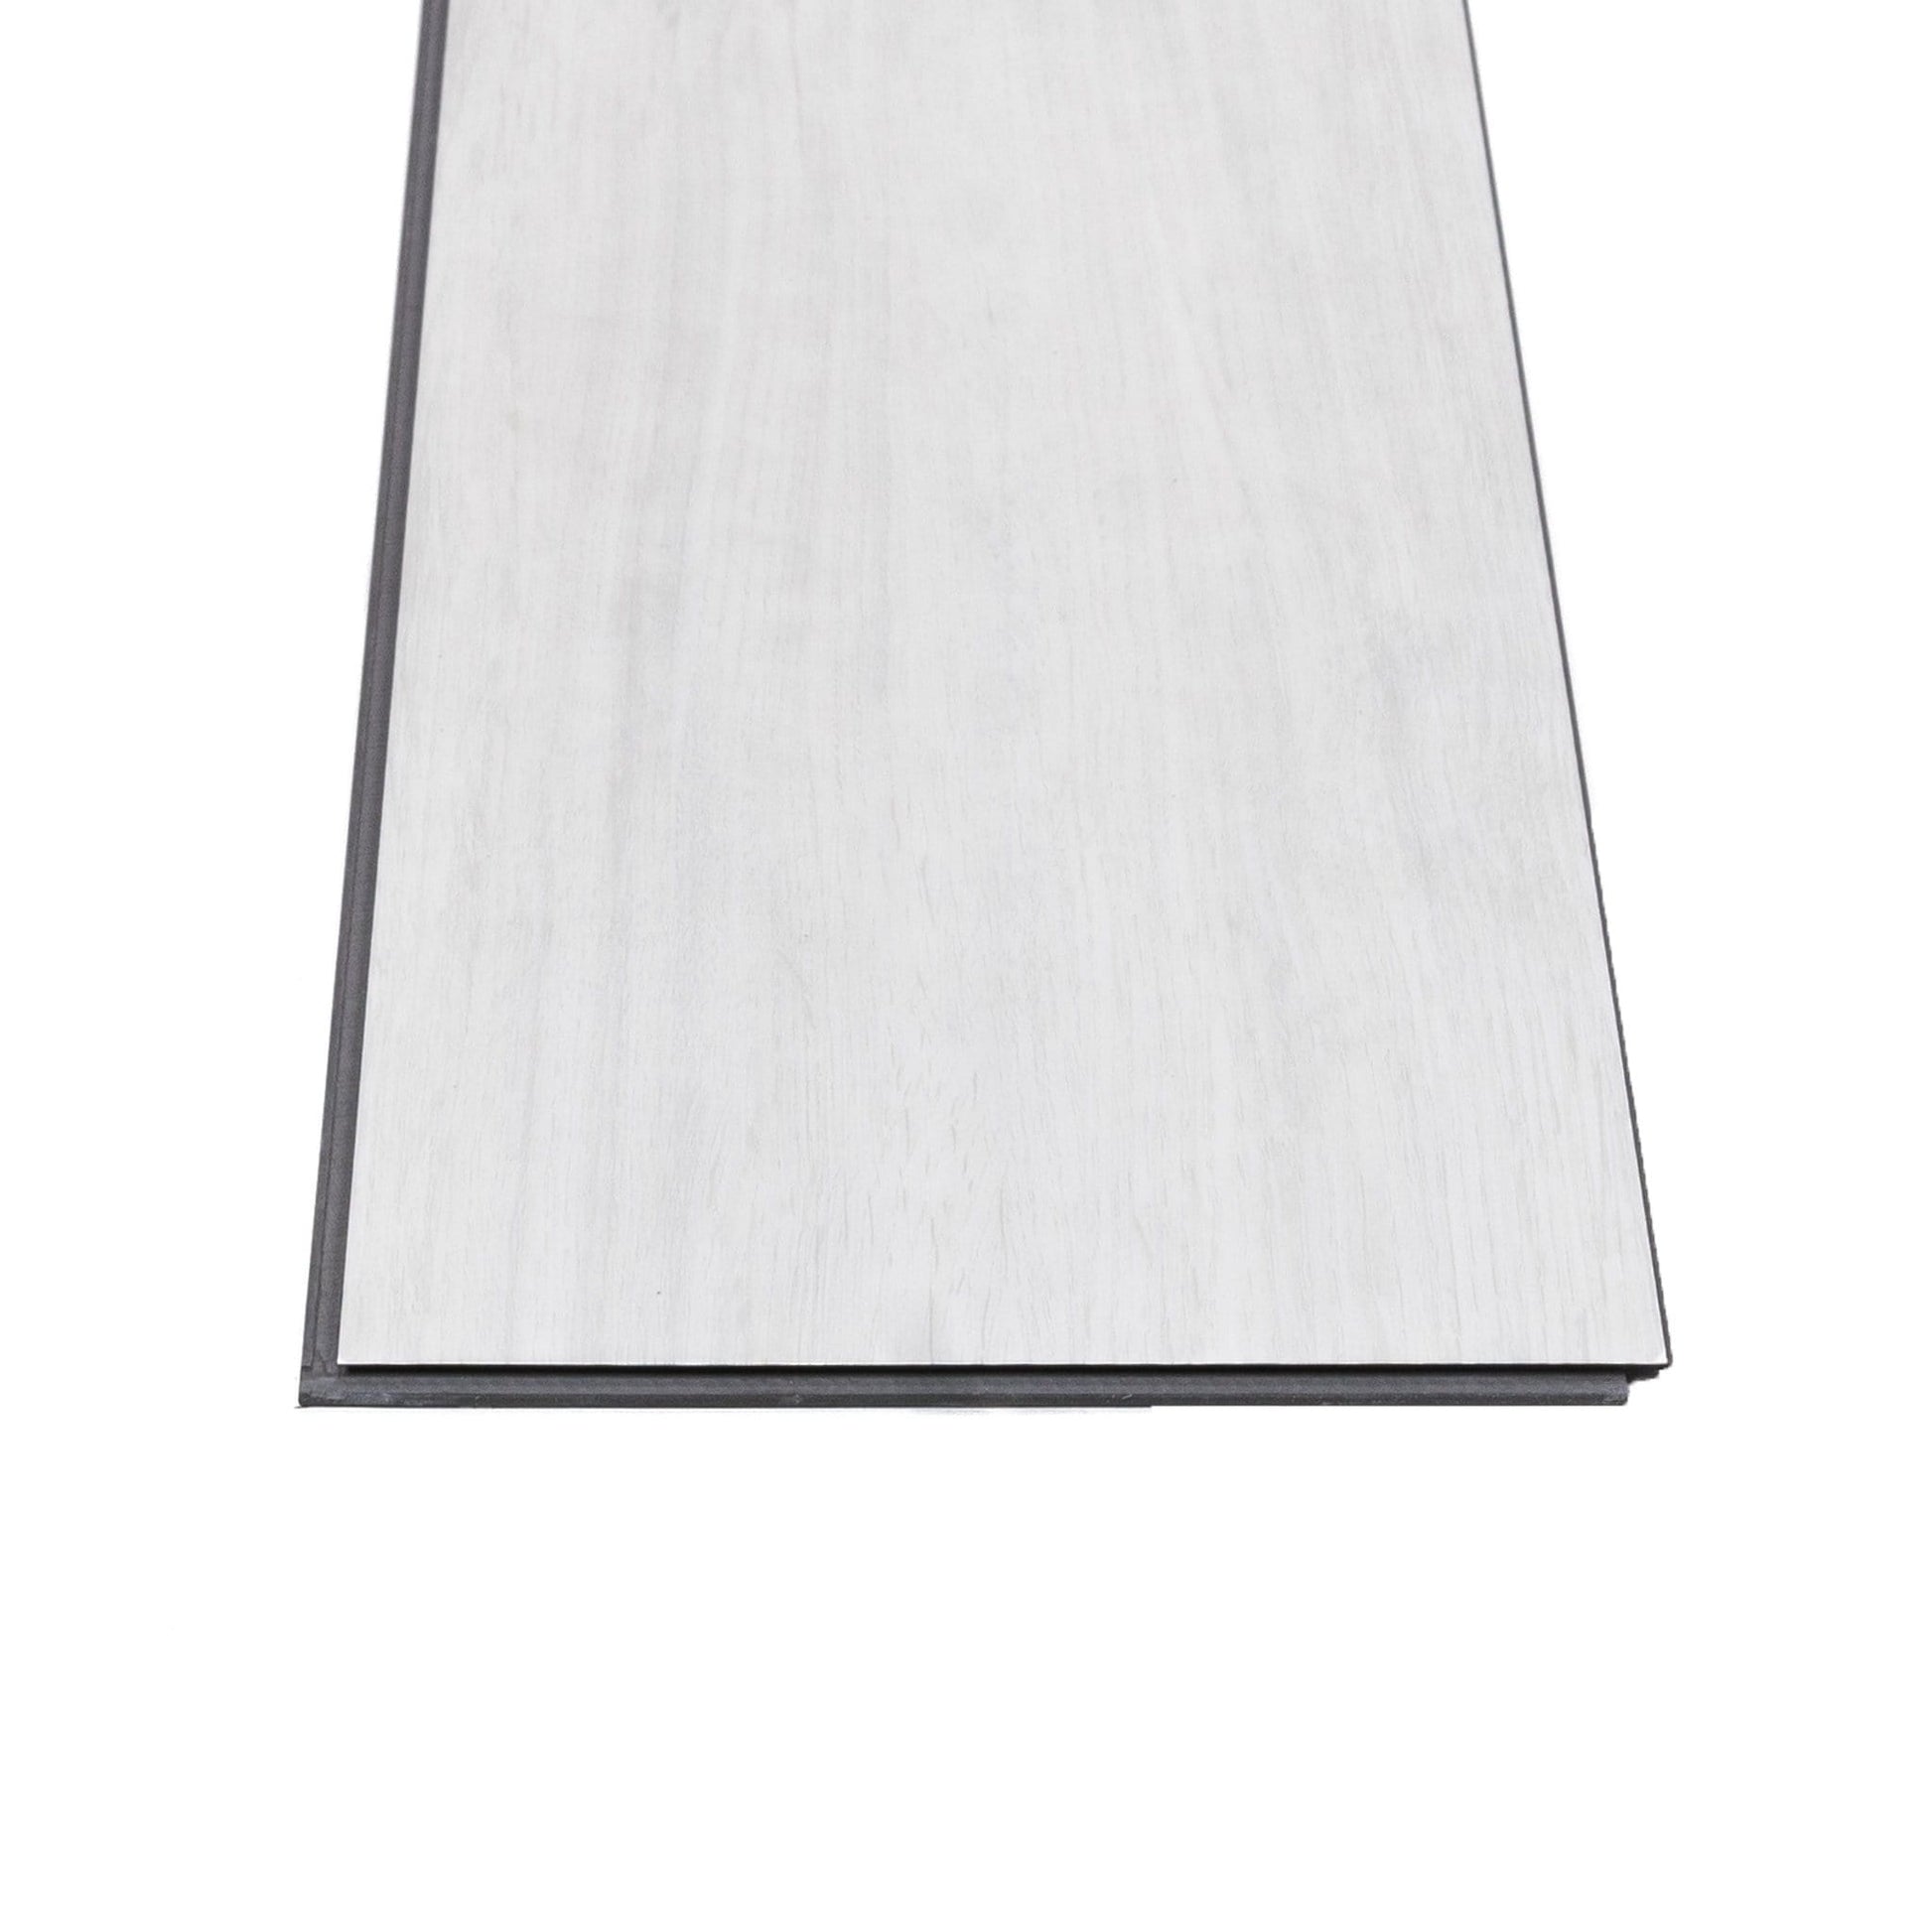 Flooring & Carpet  -  Plank Arctic Maple Flooring - 2.2M  -  50155759